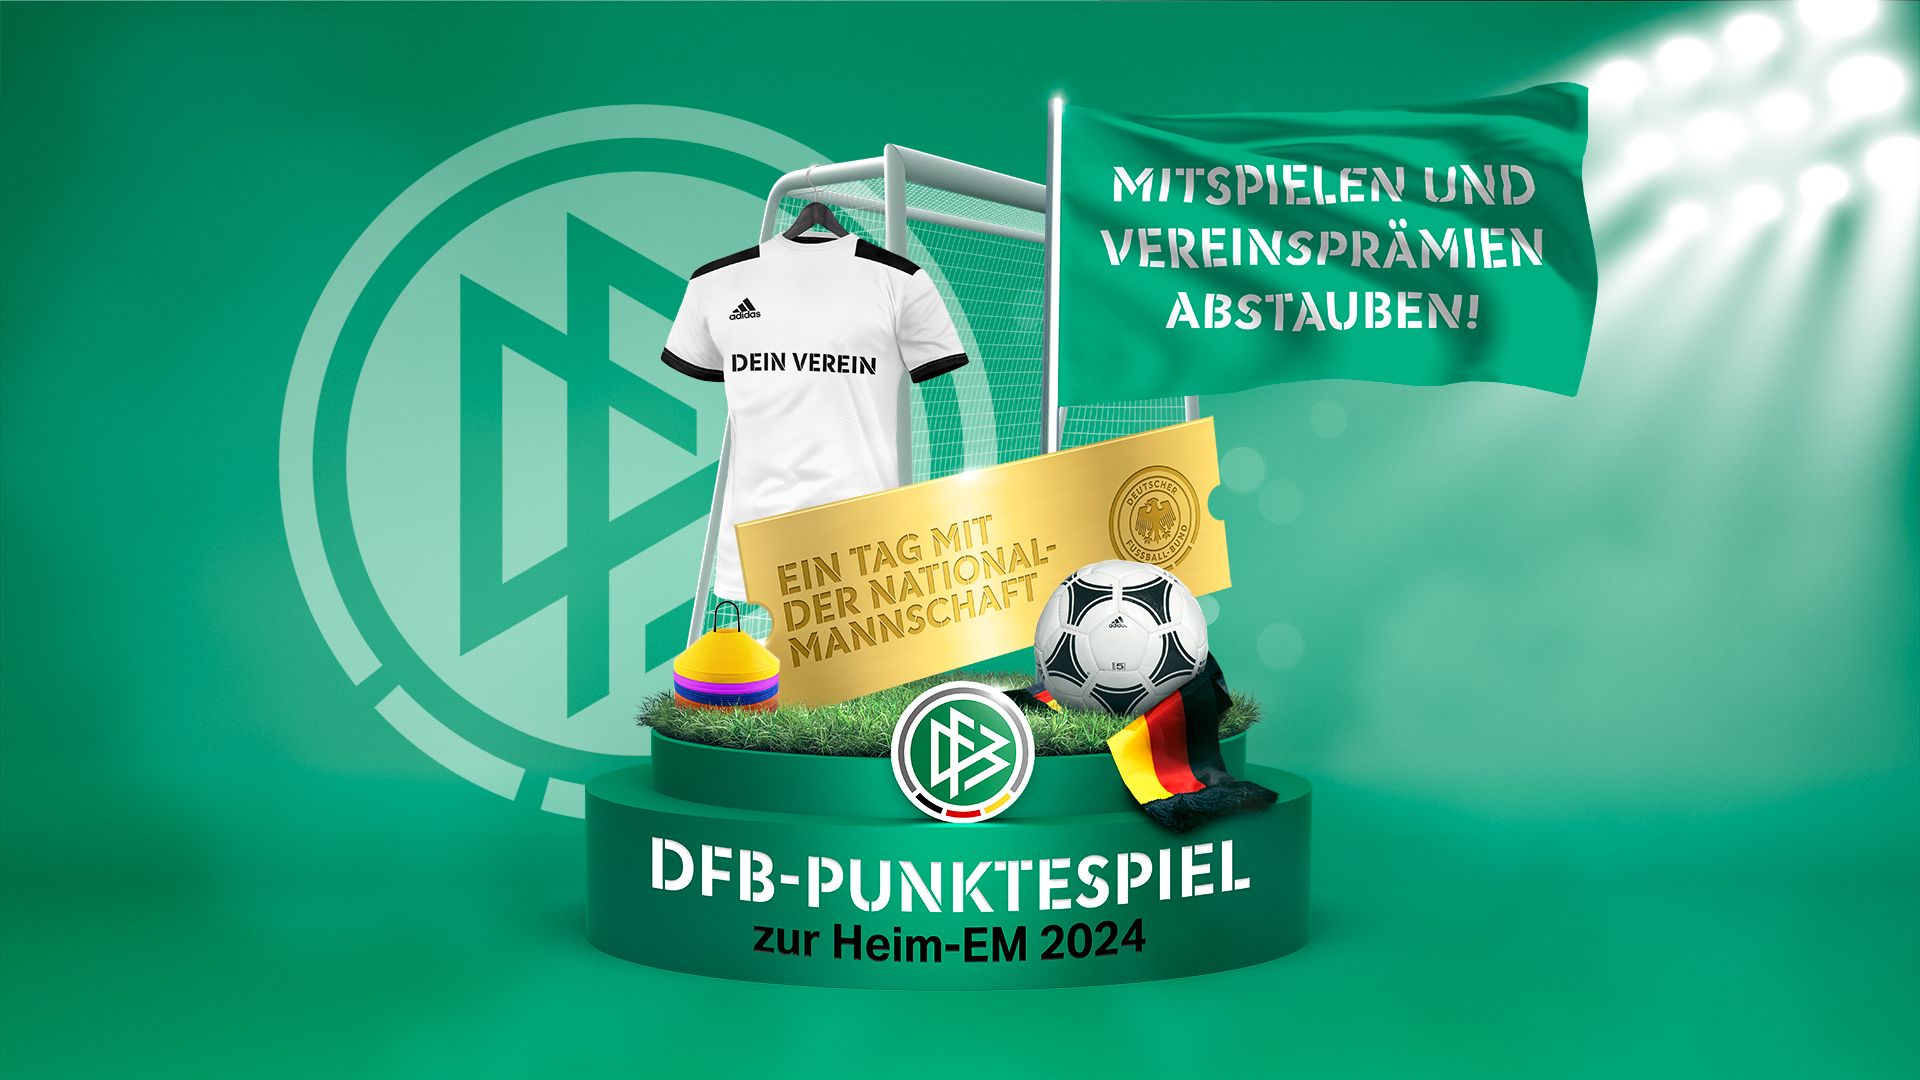 Vereinskampagne 2024 - Mitspielen und Vereinsprämien abstauben! DFB-Punktespiel zur Heim-EM 2024